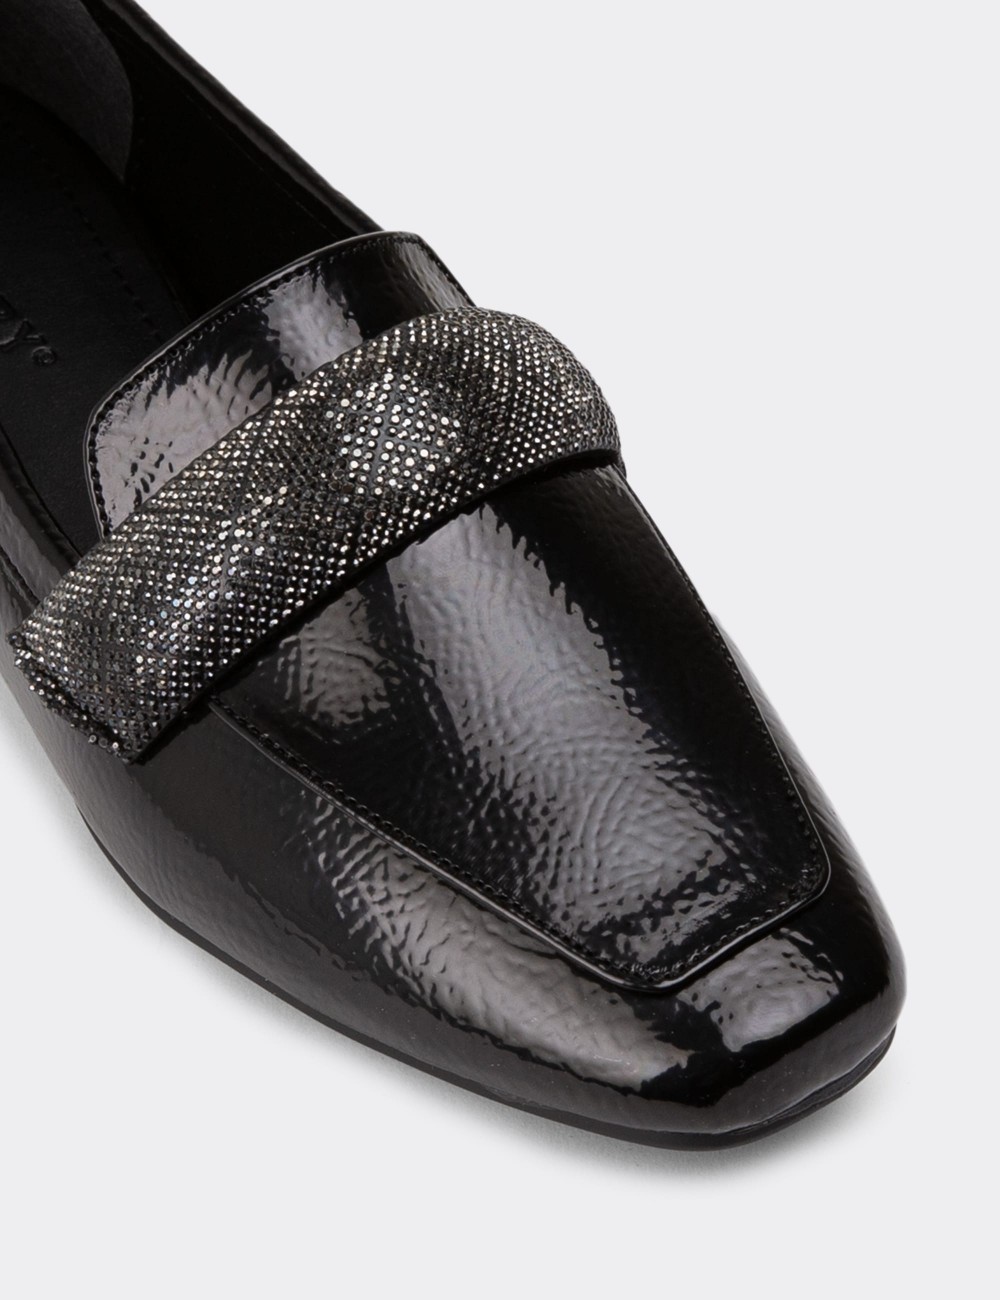 Black Patent Loafers - K1112ZSYHC01